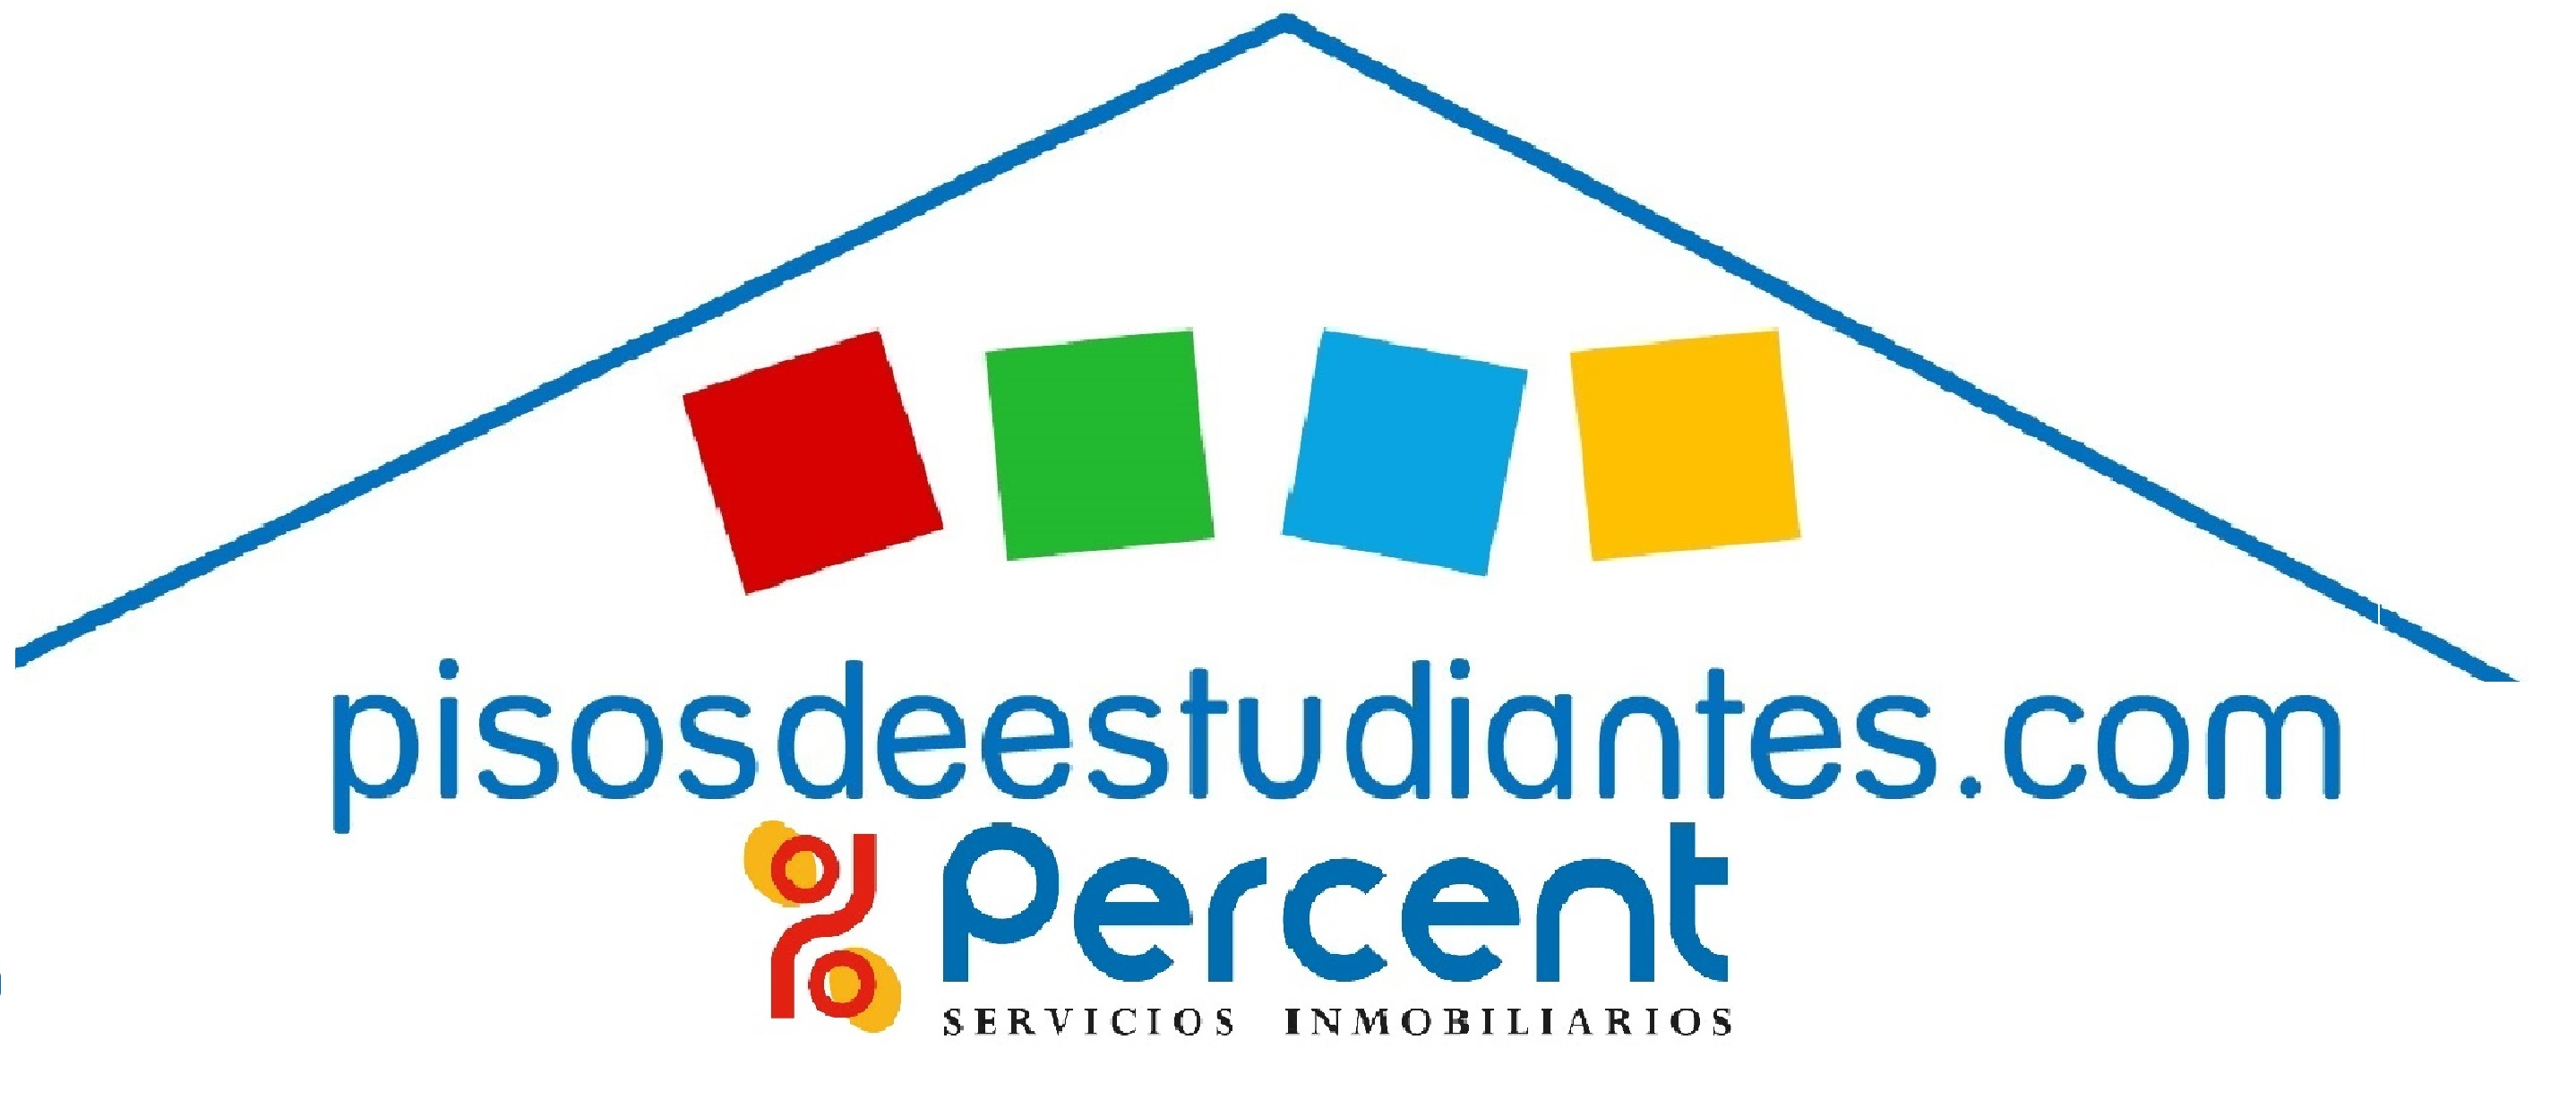 www.pisosdeestudiantes.com Percent Compostela